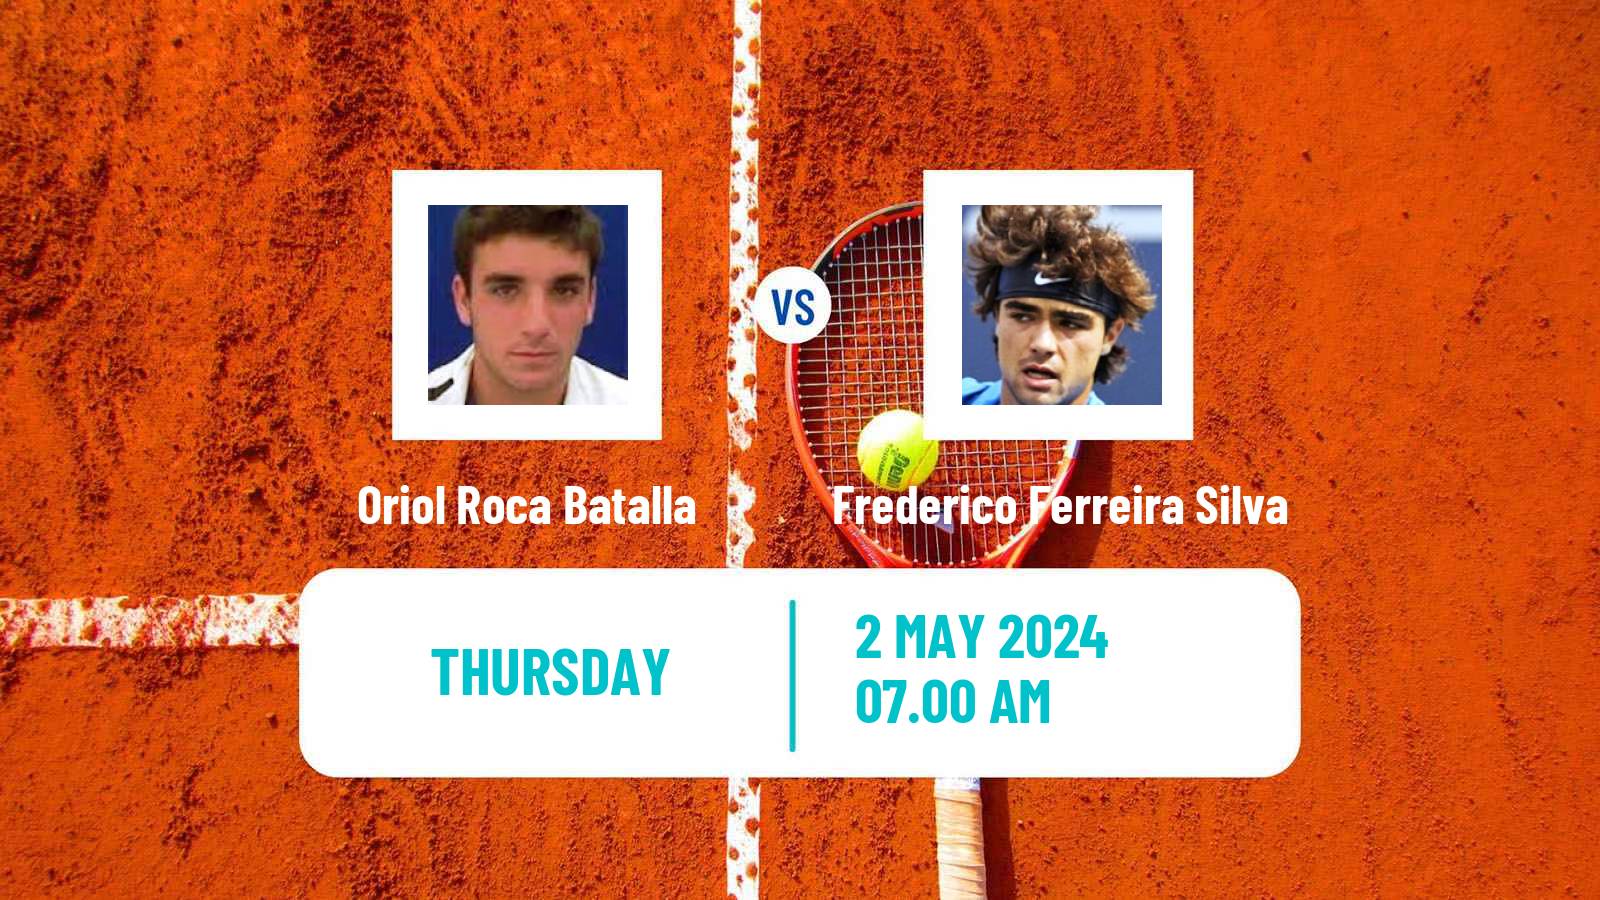 Tennis ITF M25 Sabadell Men Oriol Roca Batalla - Frederico Ferreira Silva